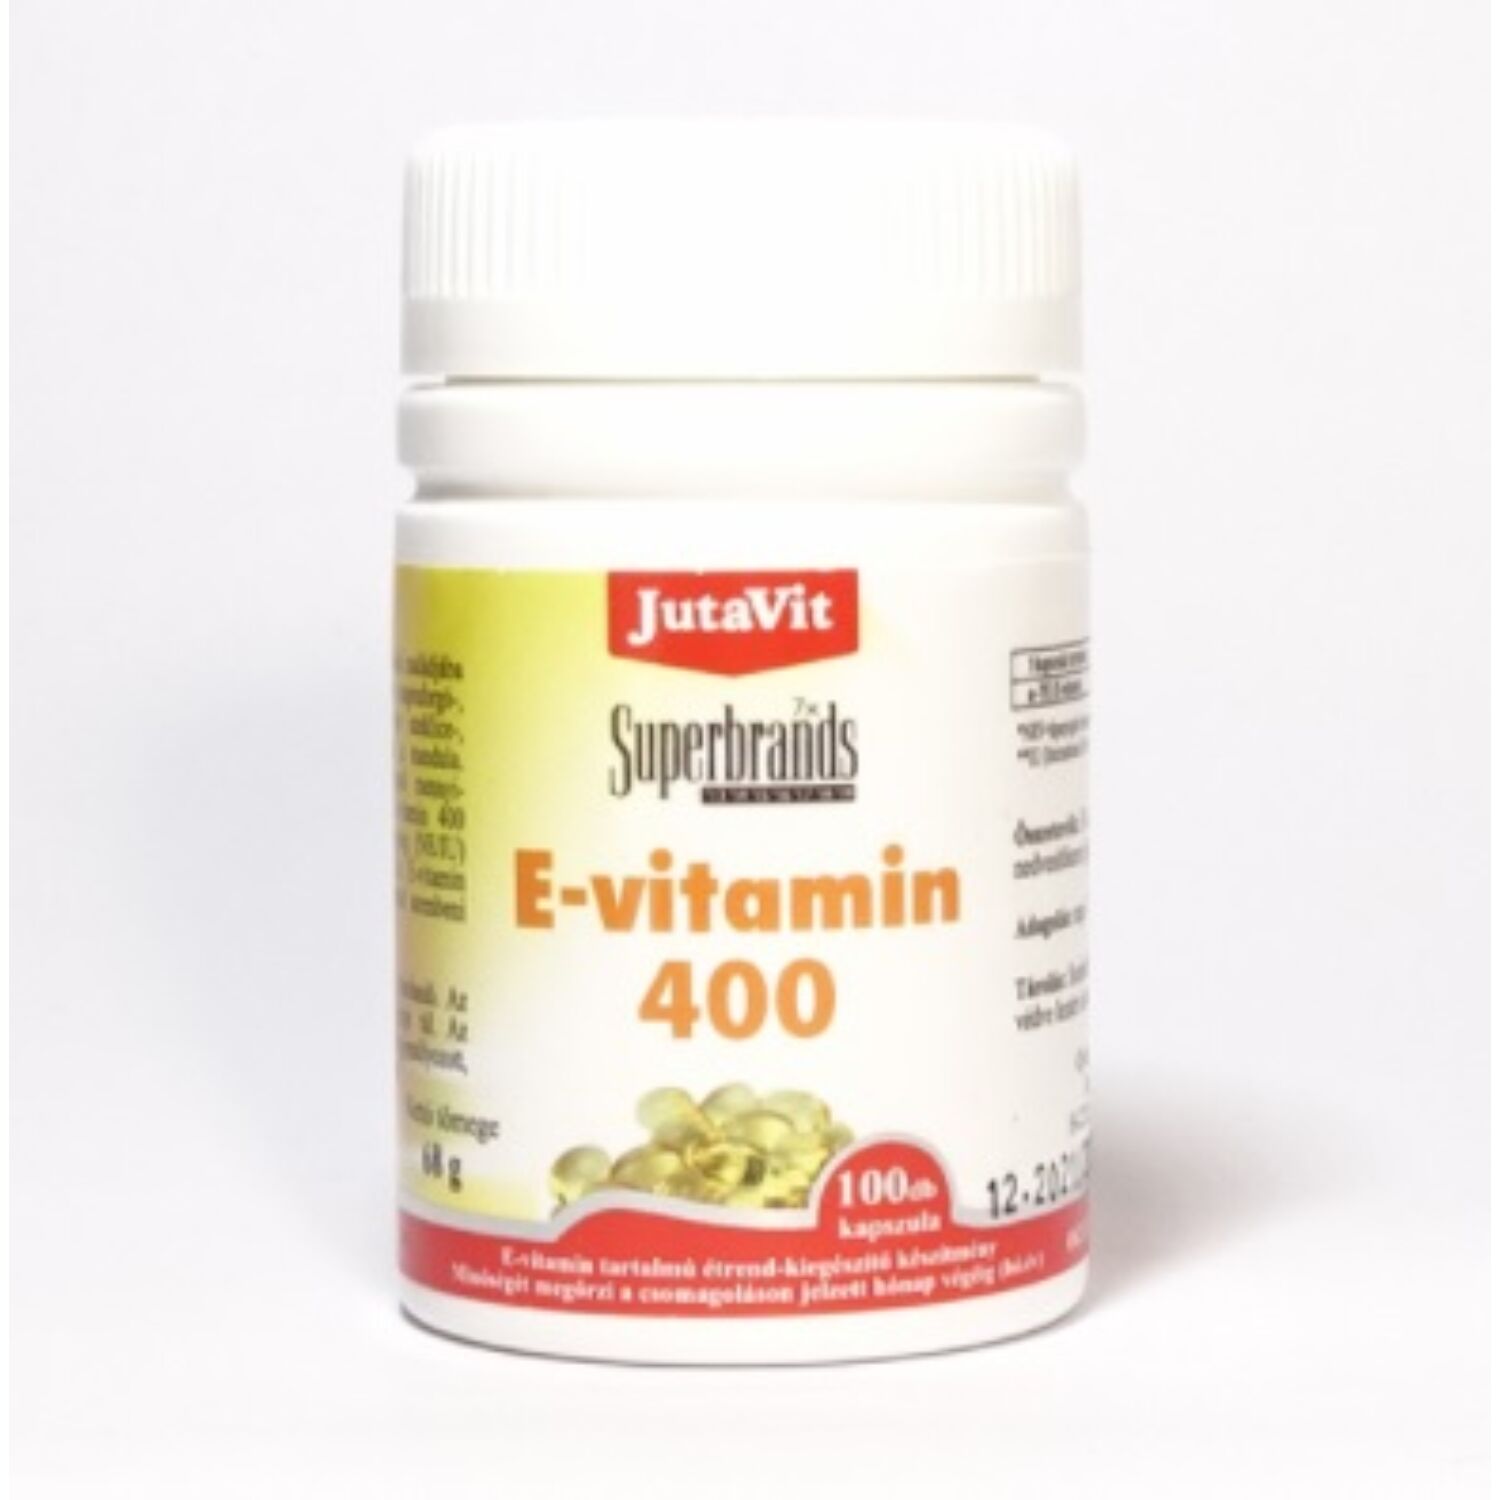 Jutavit E vitamin 400 - 100 db